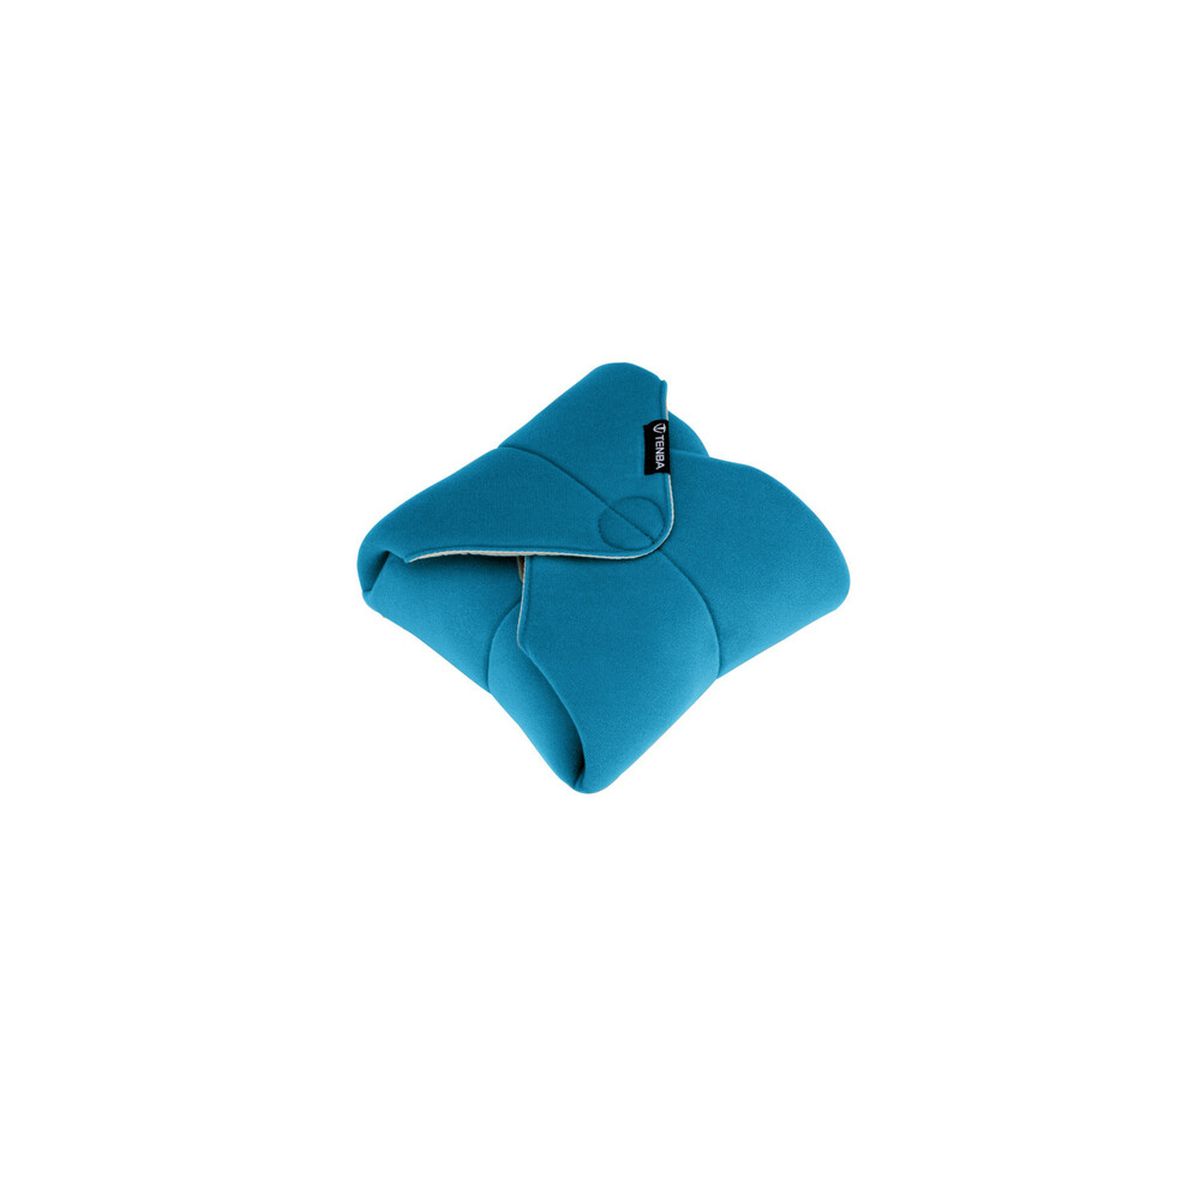 Tenba Tools 16 Zoll Wrap (Einschlagtuch) Blau